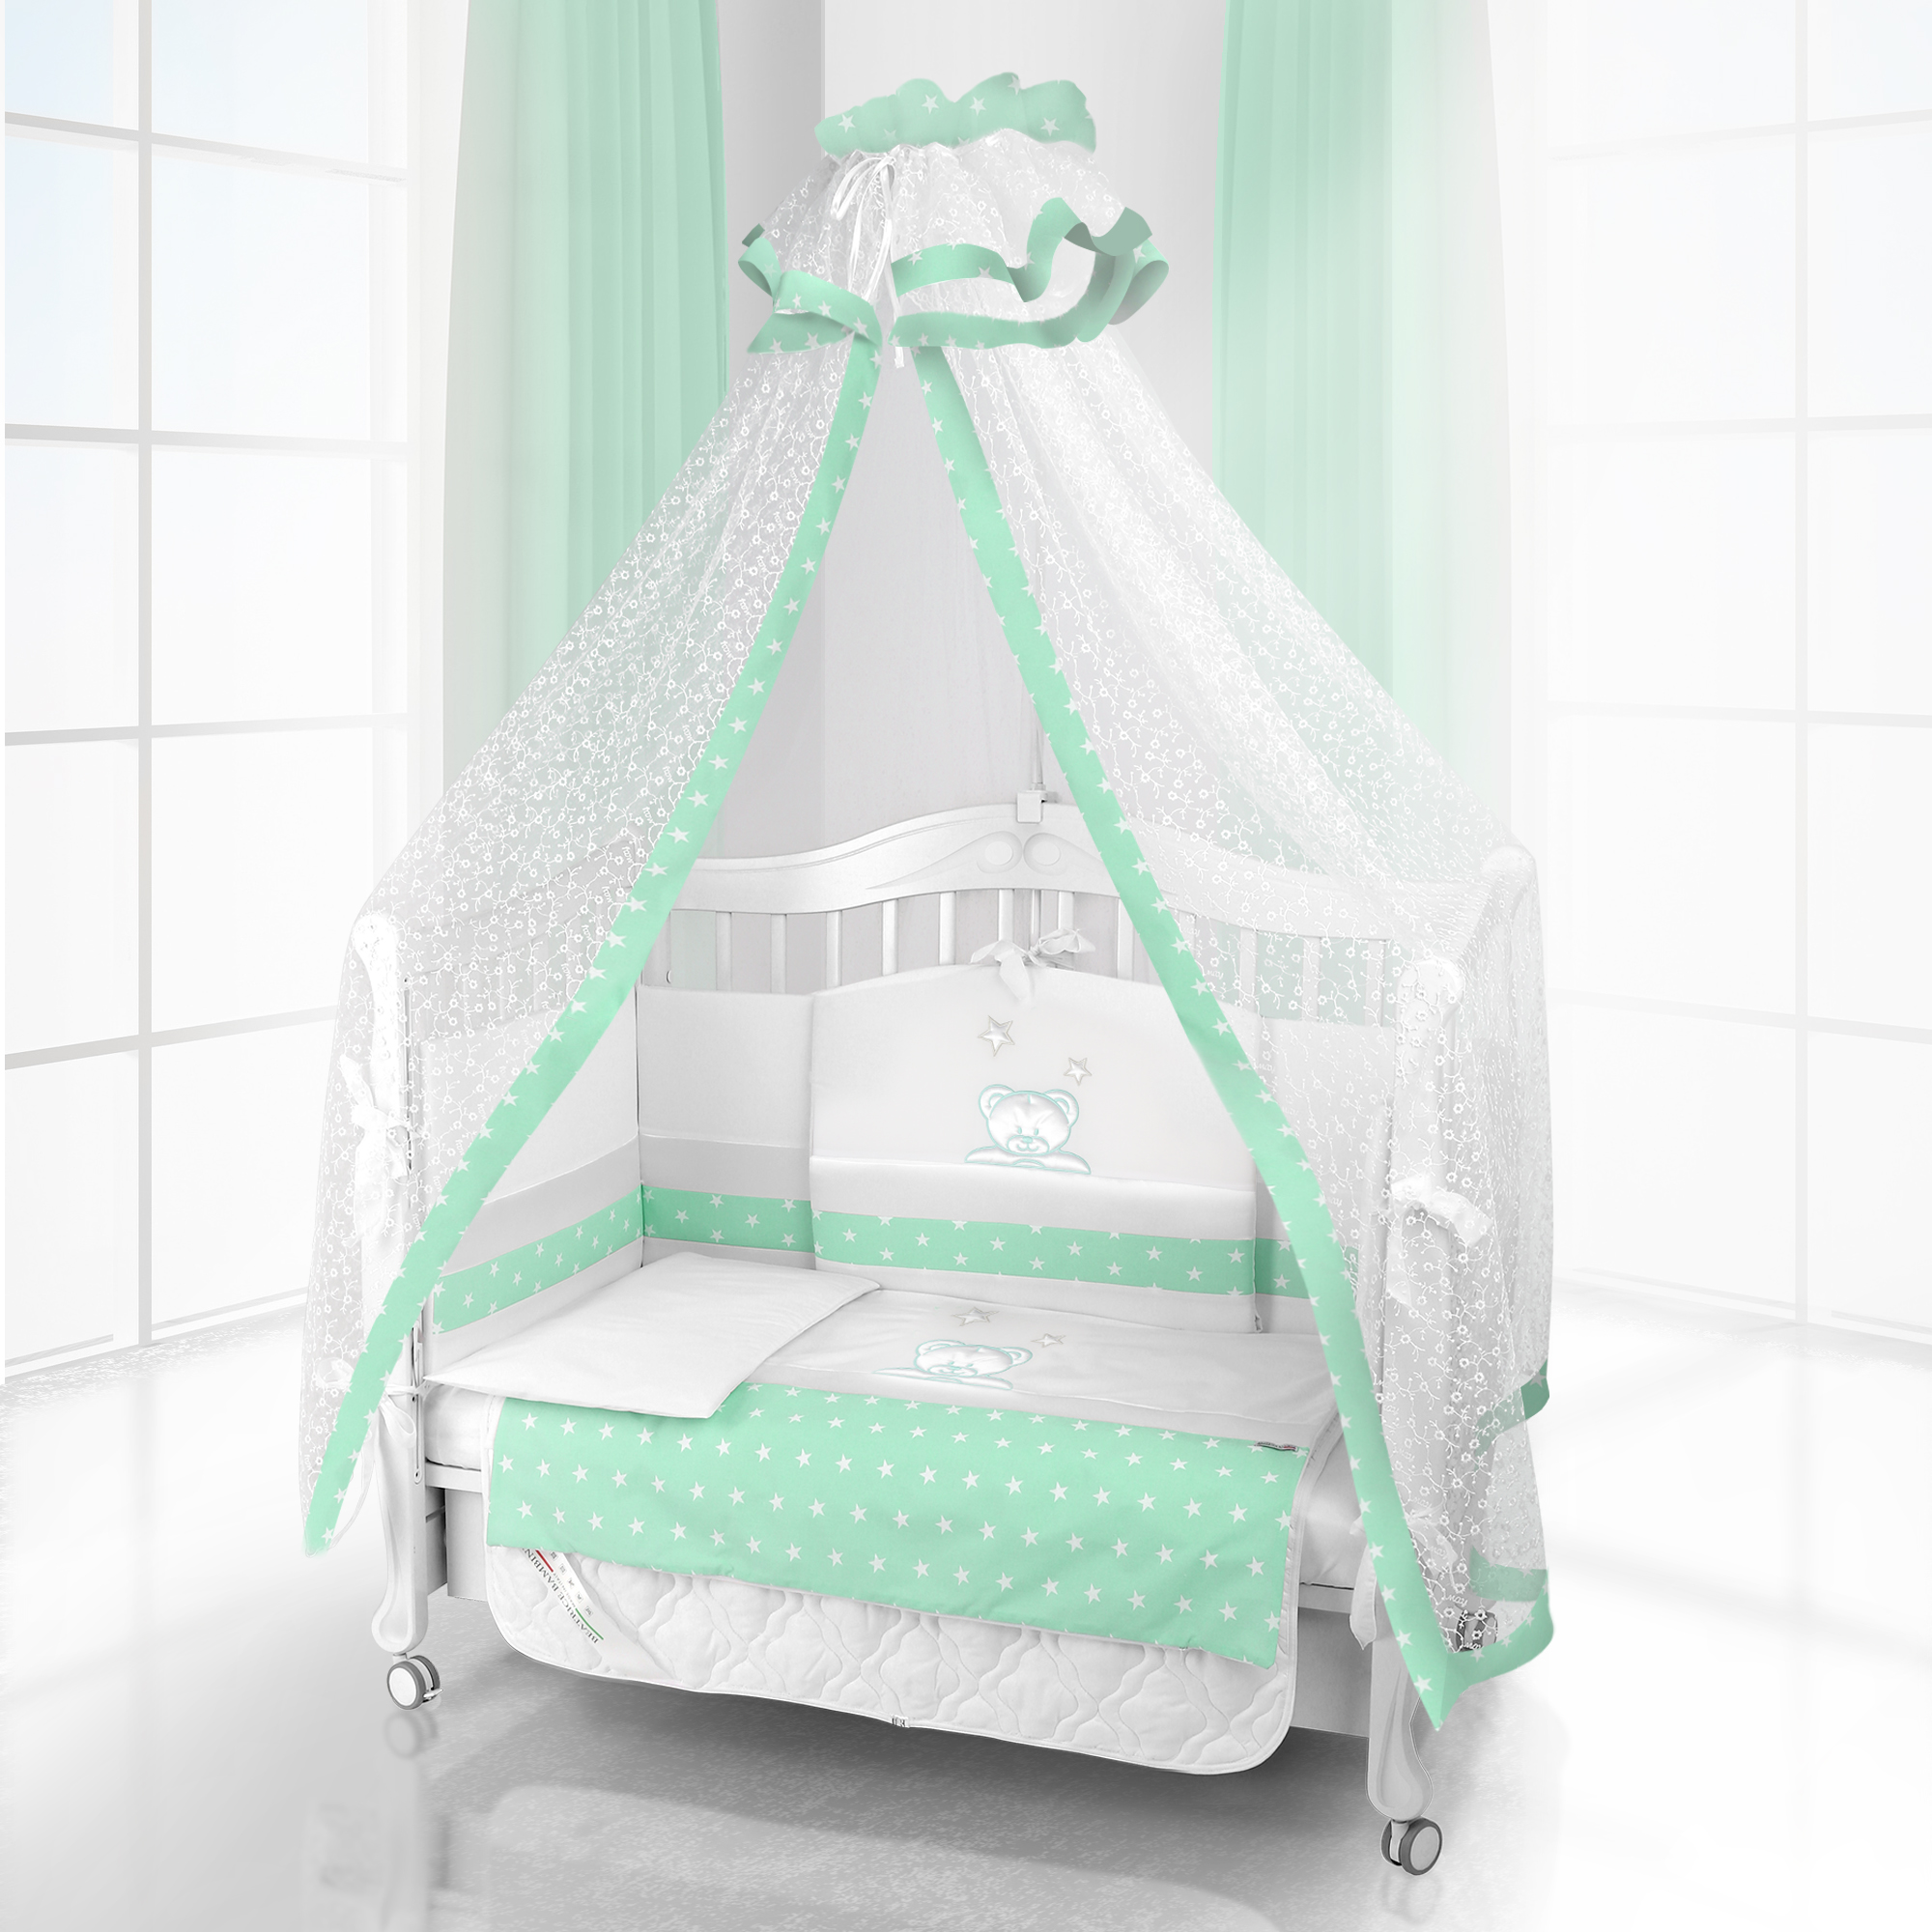 Комплект постельного белья Beatrice Bambini Unico Capolino (120х60) (bianco verde)